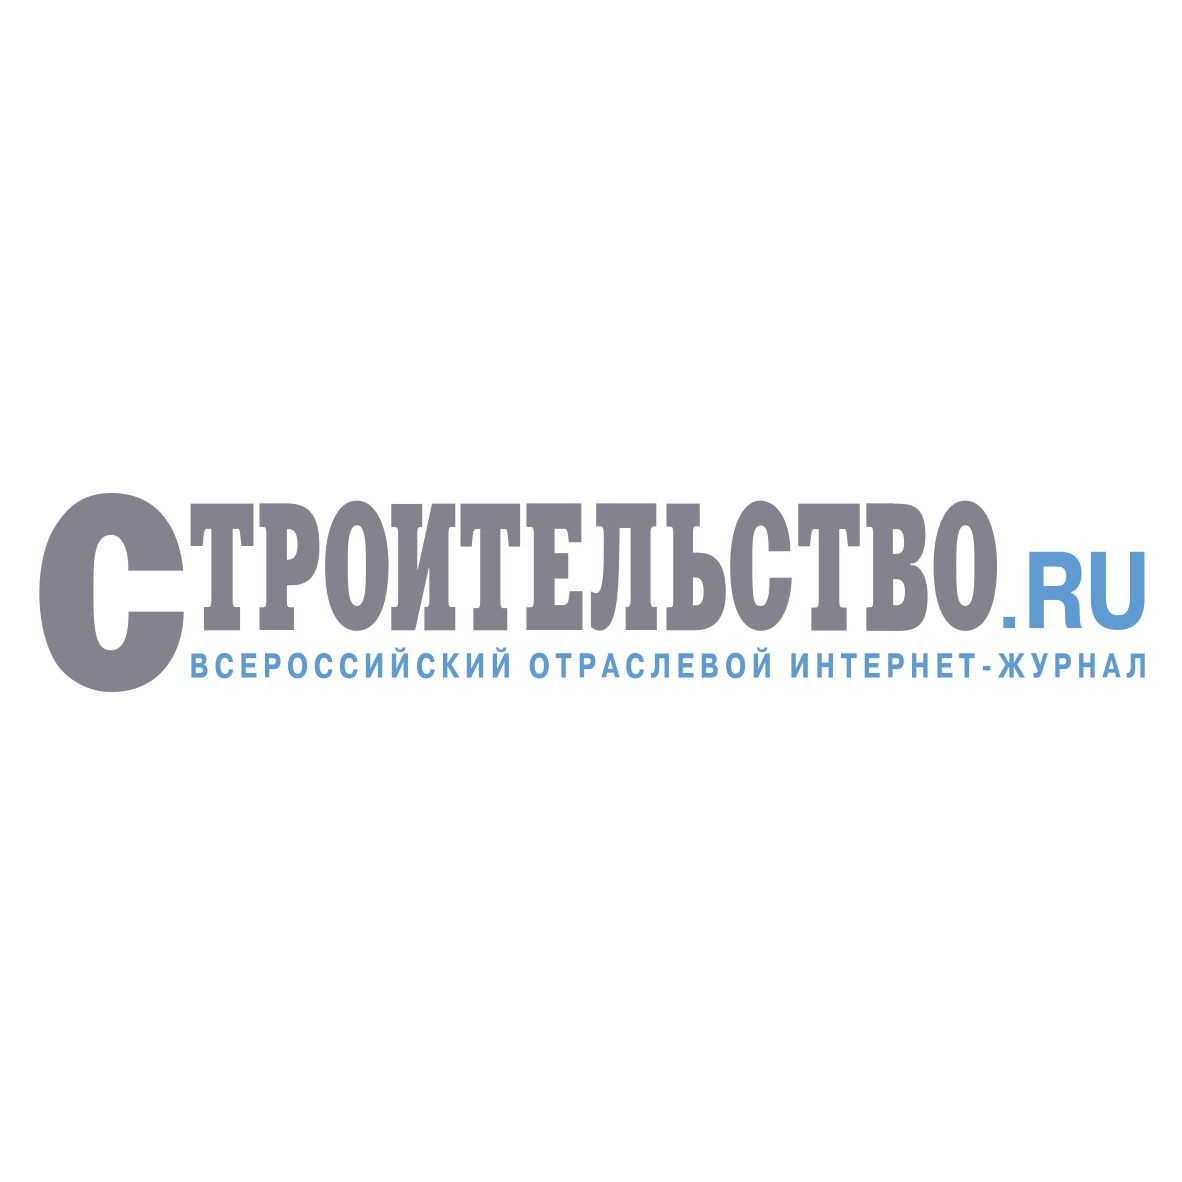 Всероссийский Интернет-журнал «Строительство.RU»